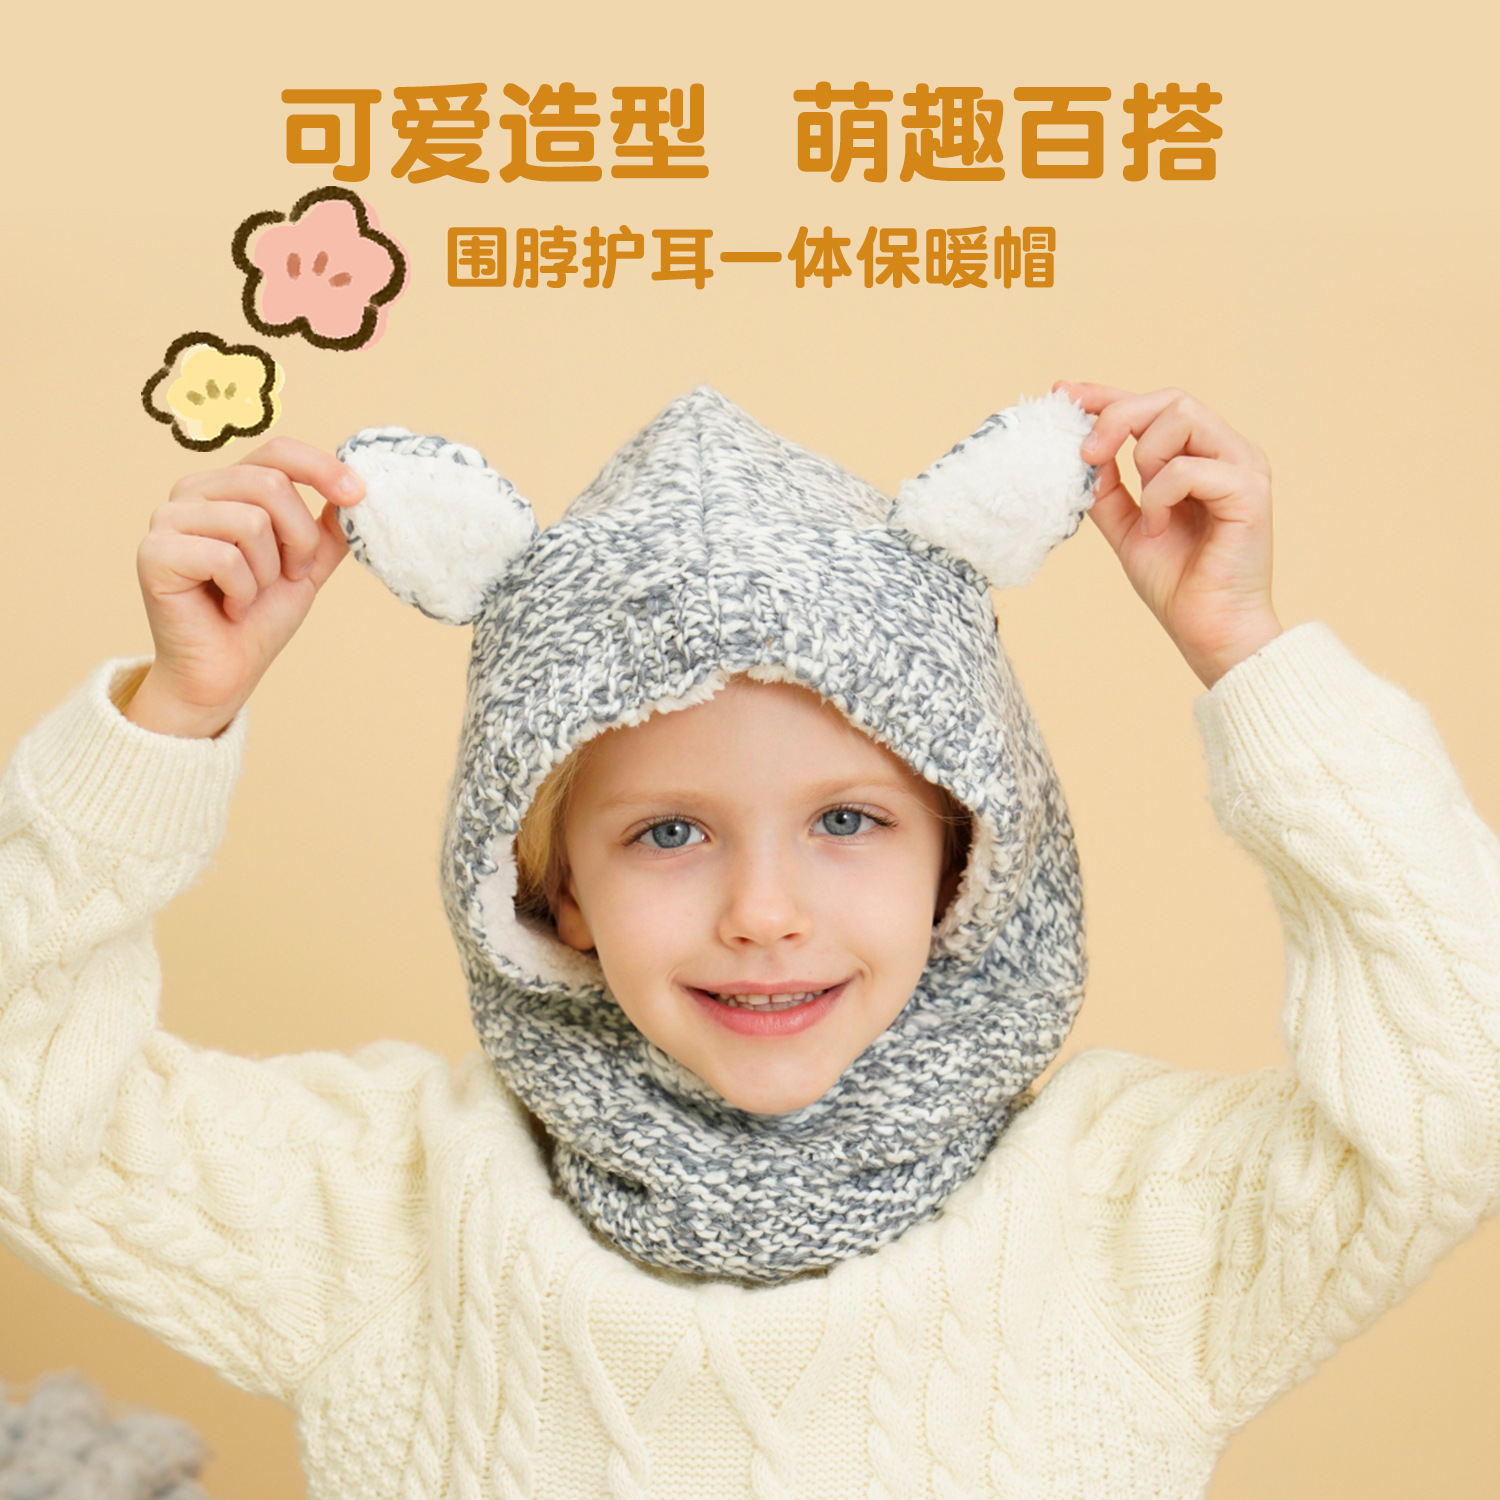 儿童帽子冬季宝宝套头帽男童女婴防寒保暖加厚护颈护耳一体冬帽子